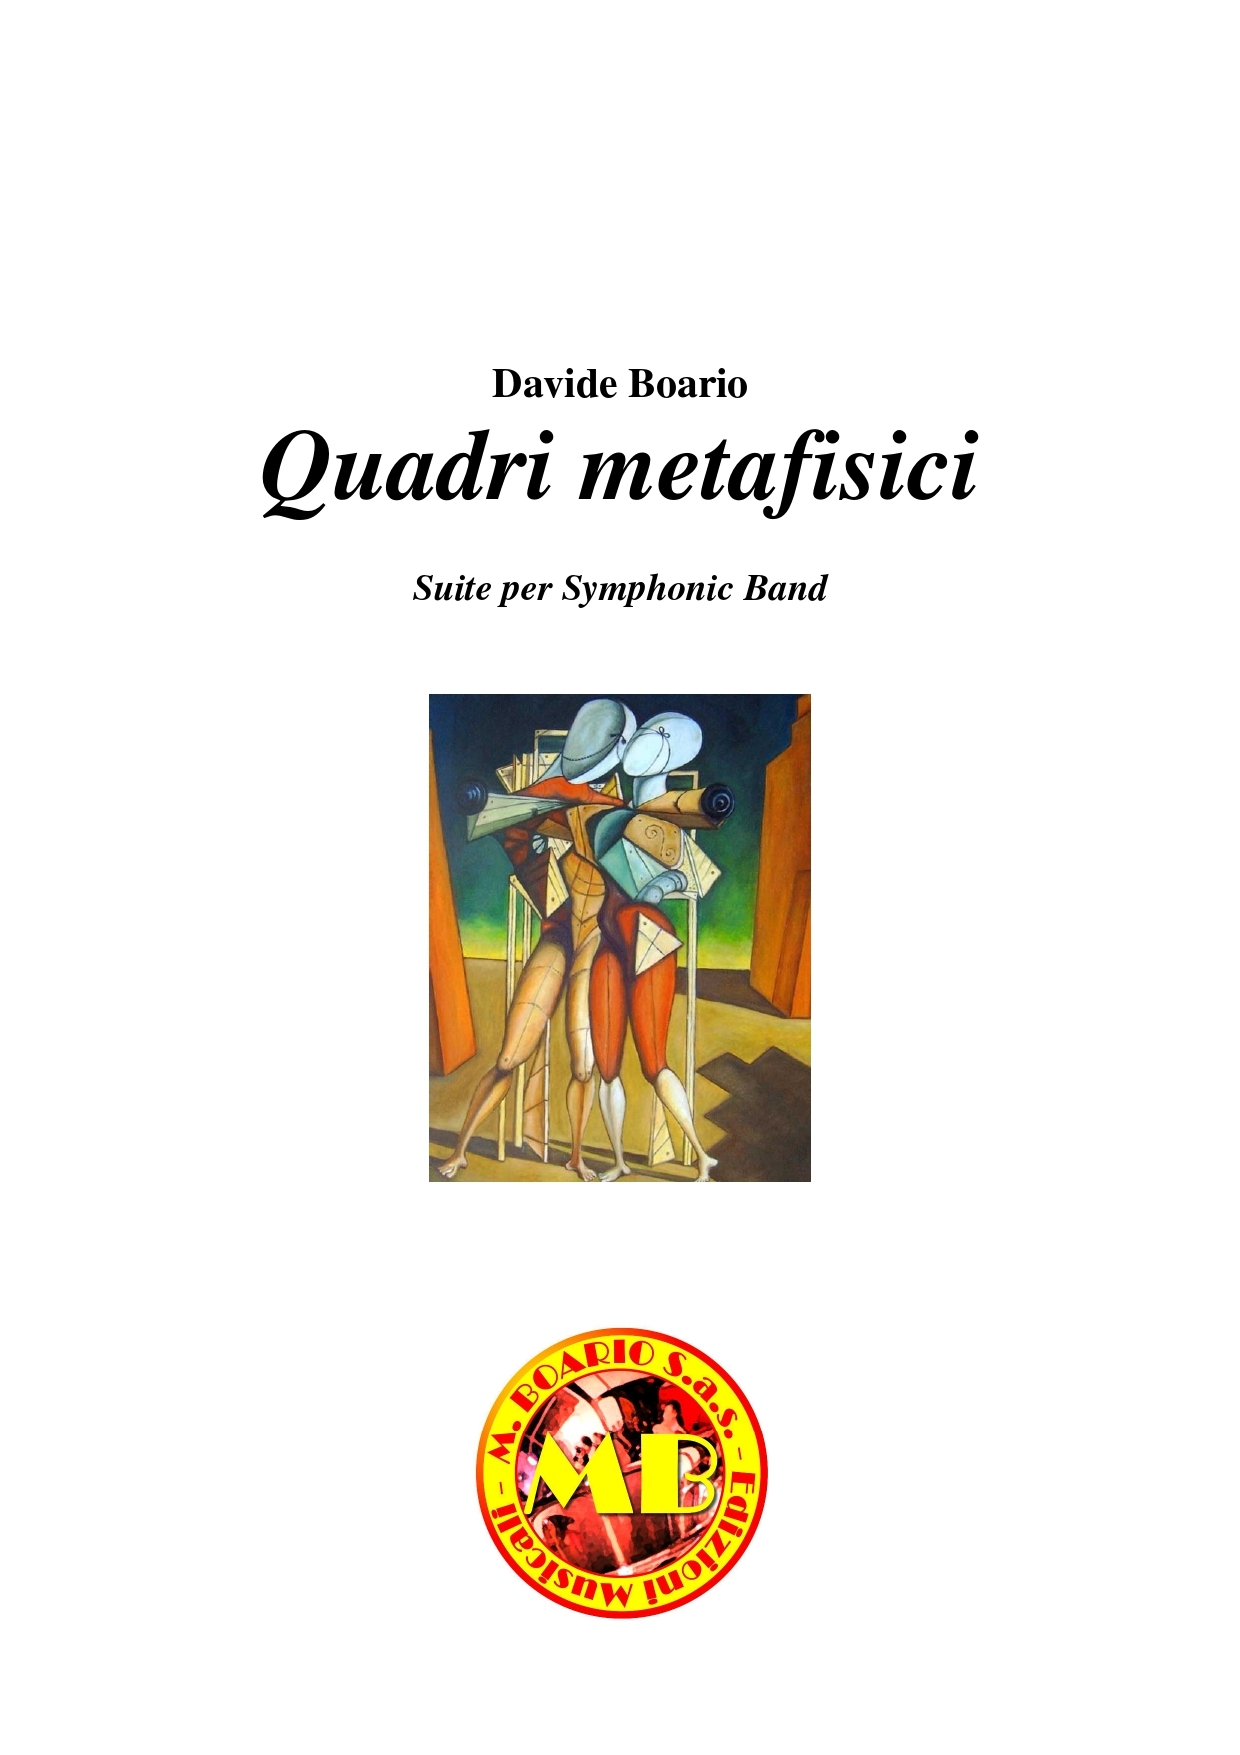 000_Quadri_metafisici_Copertina_e_interno_page-0001